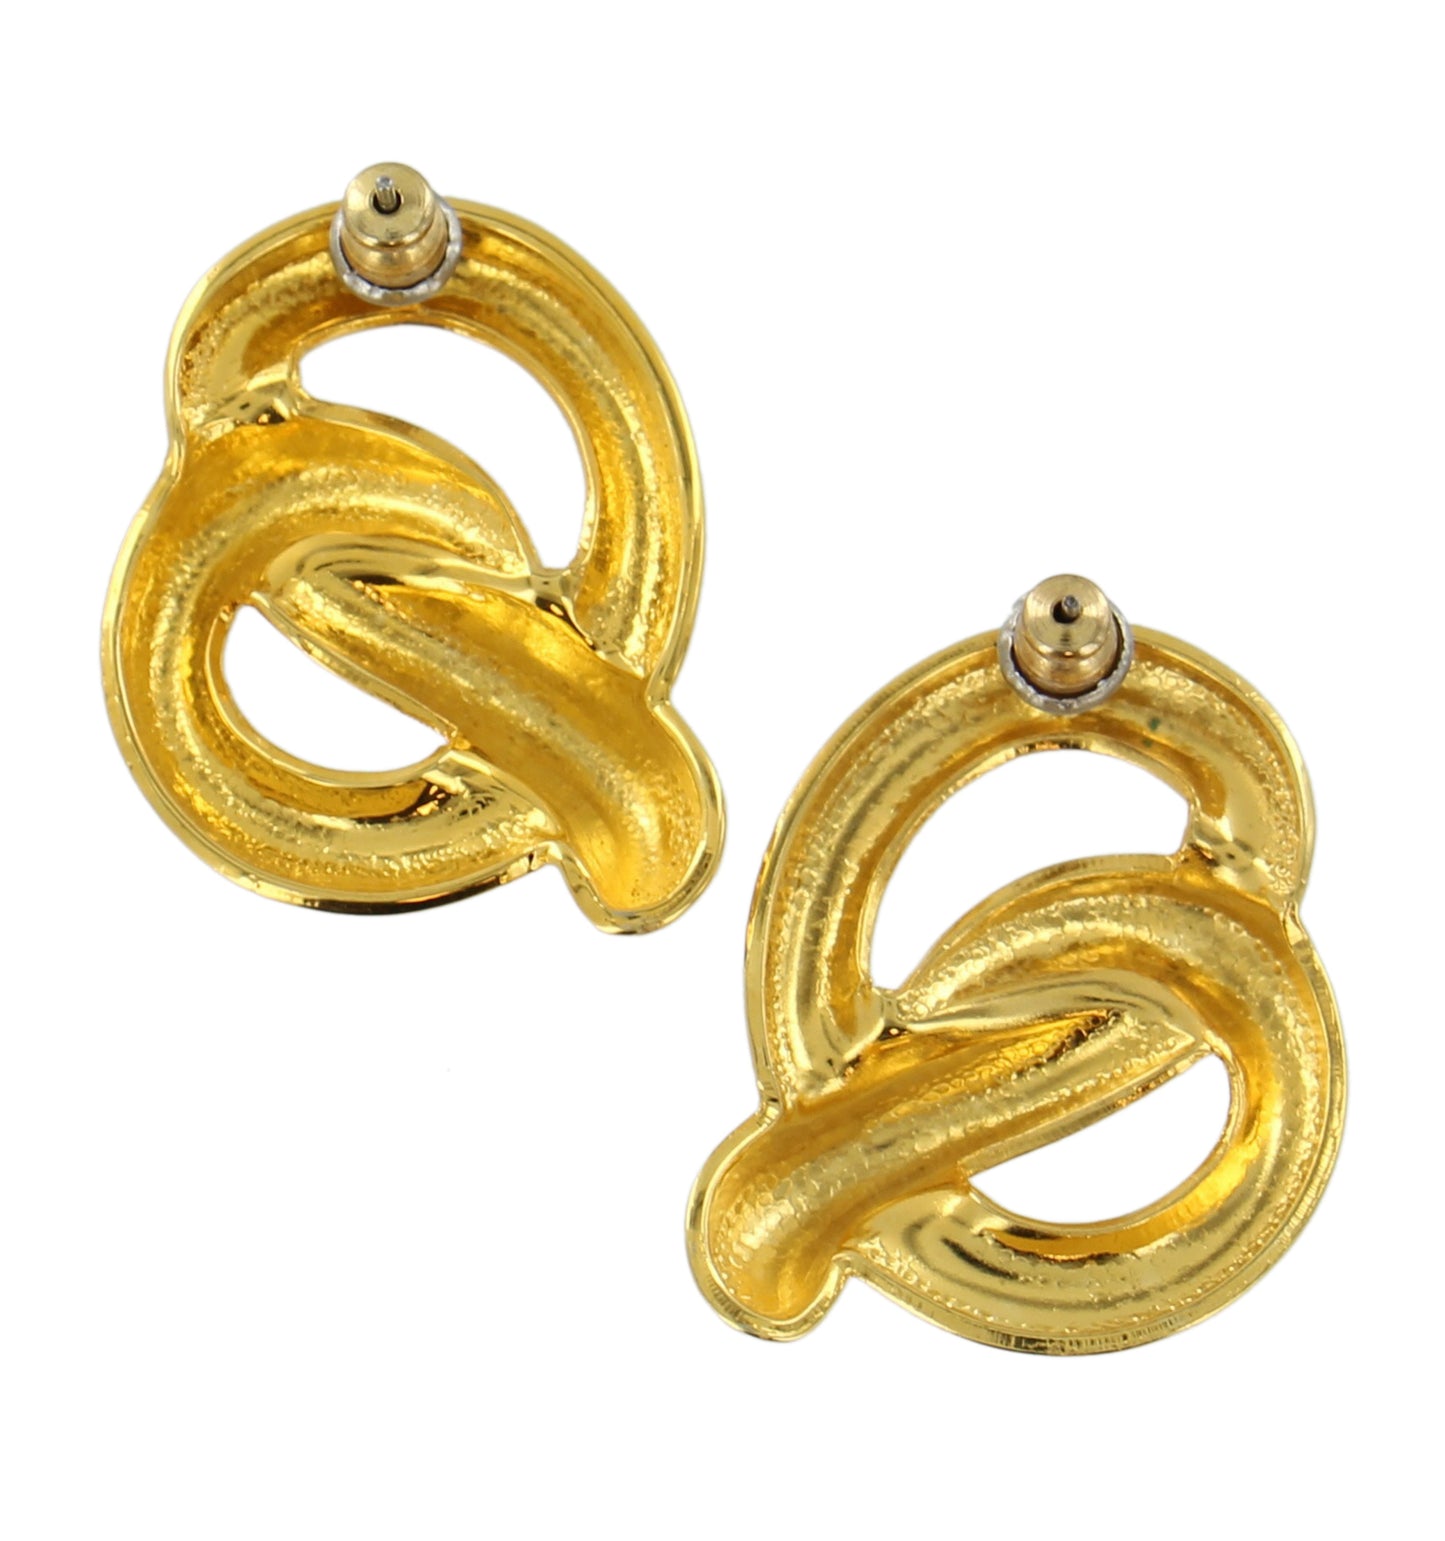 Knotted Pretzel Gold Tone Pierced Earrings 1"